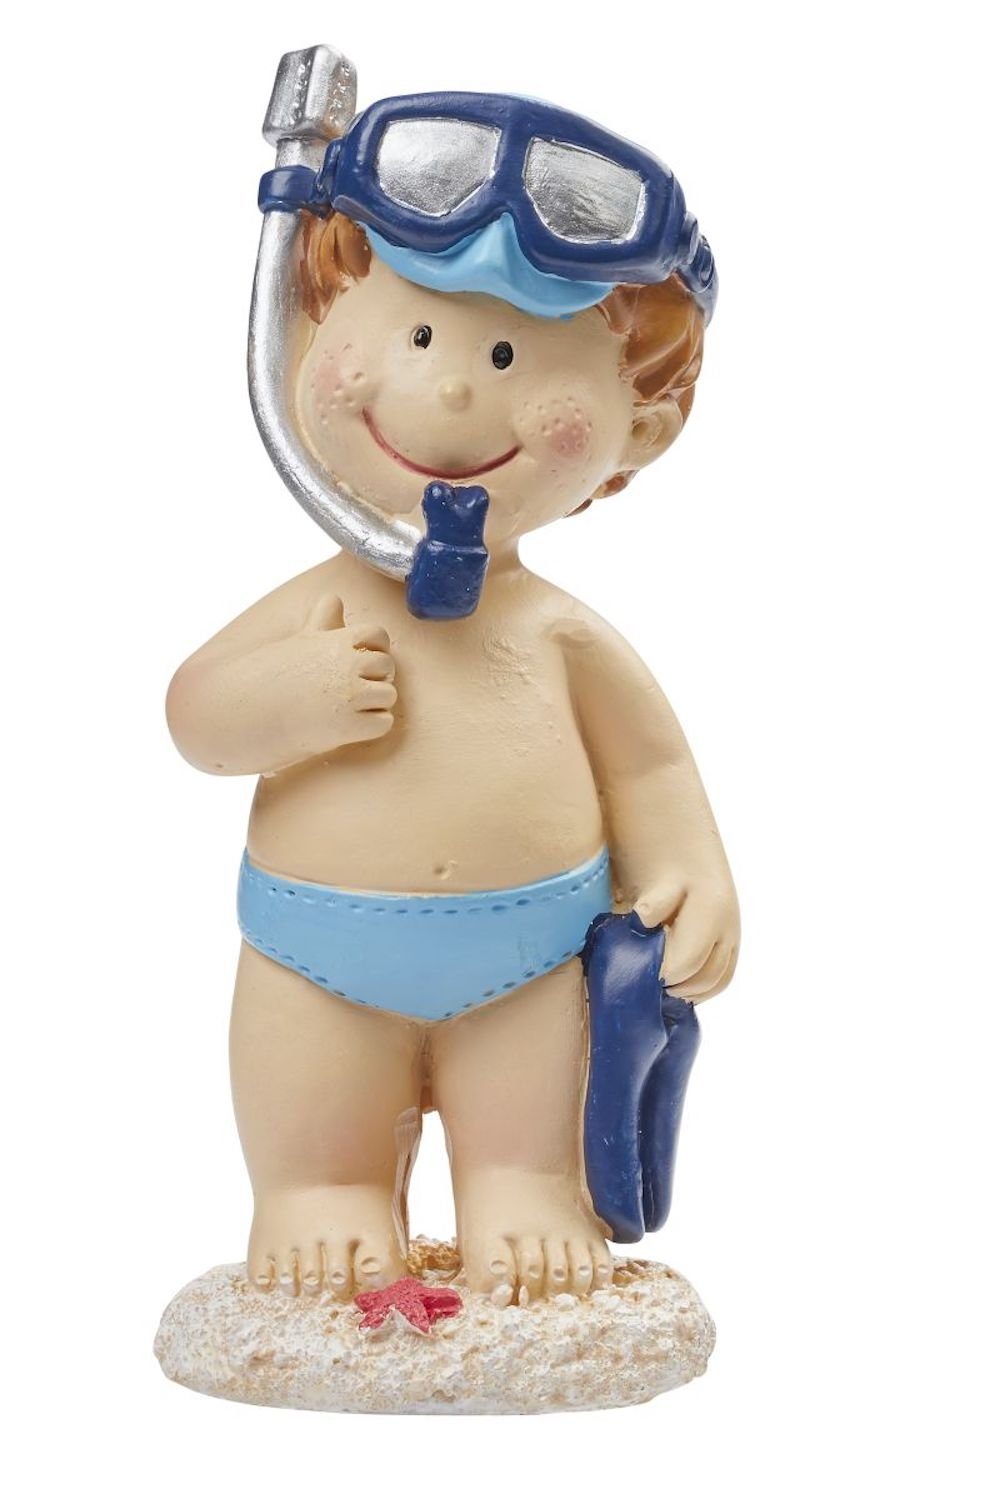 HobbyFun Dekofigur Badefigur Junge mit Tauch-Ausrüstung, ca. 8cm, ste